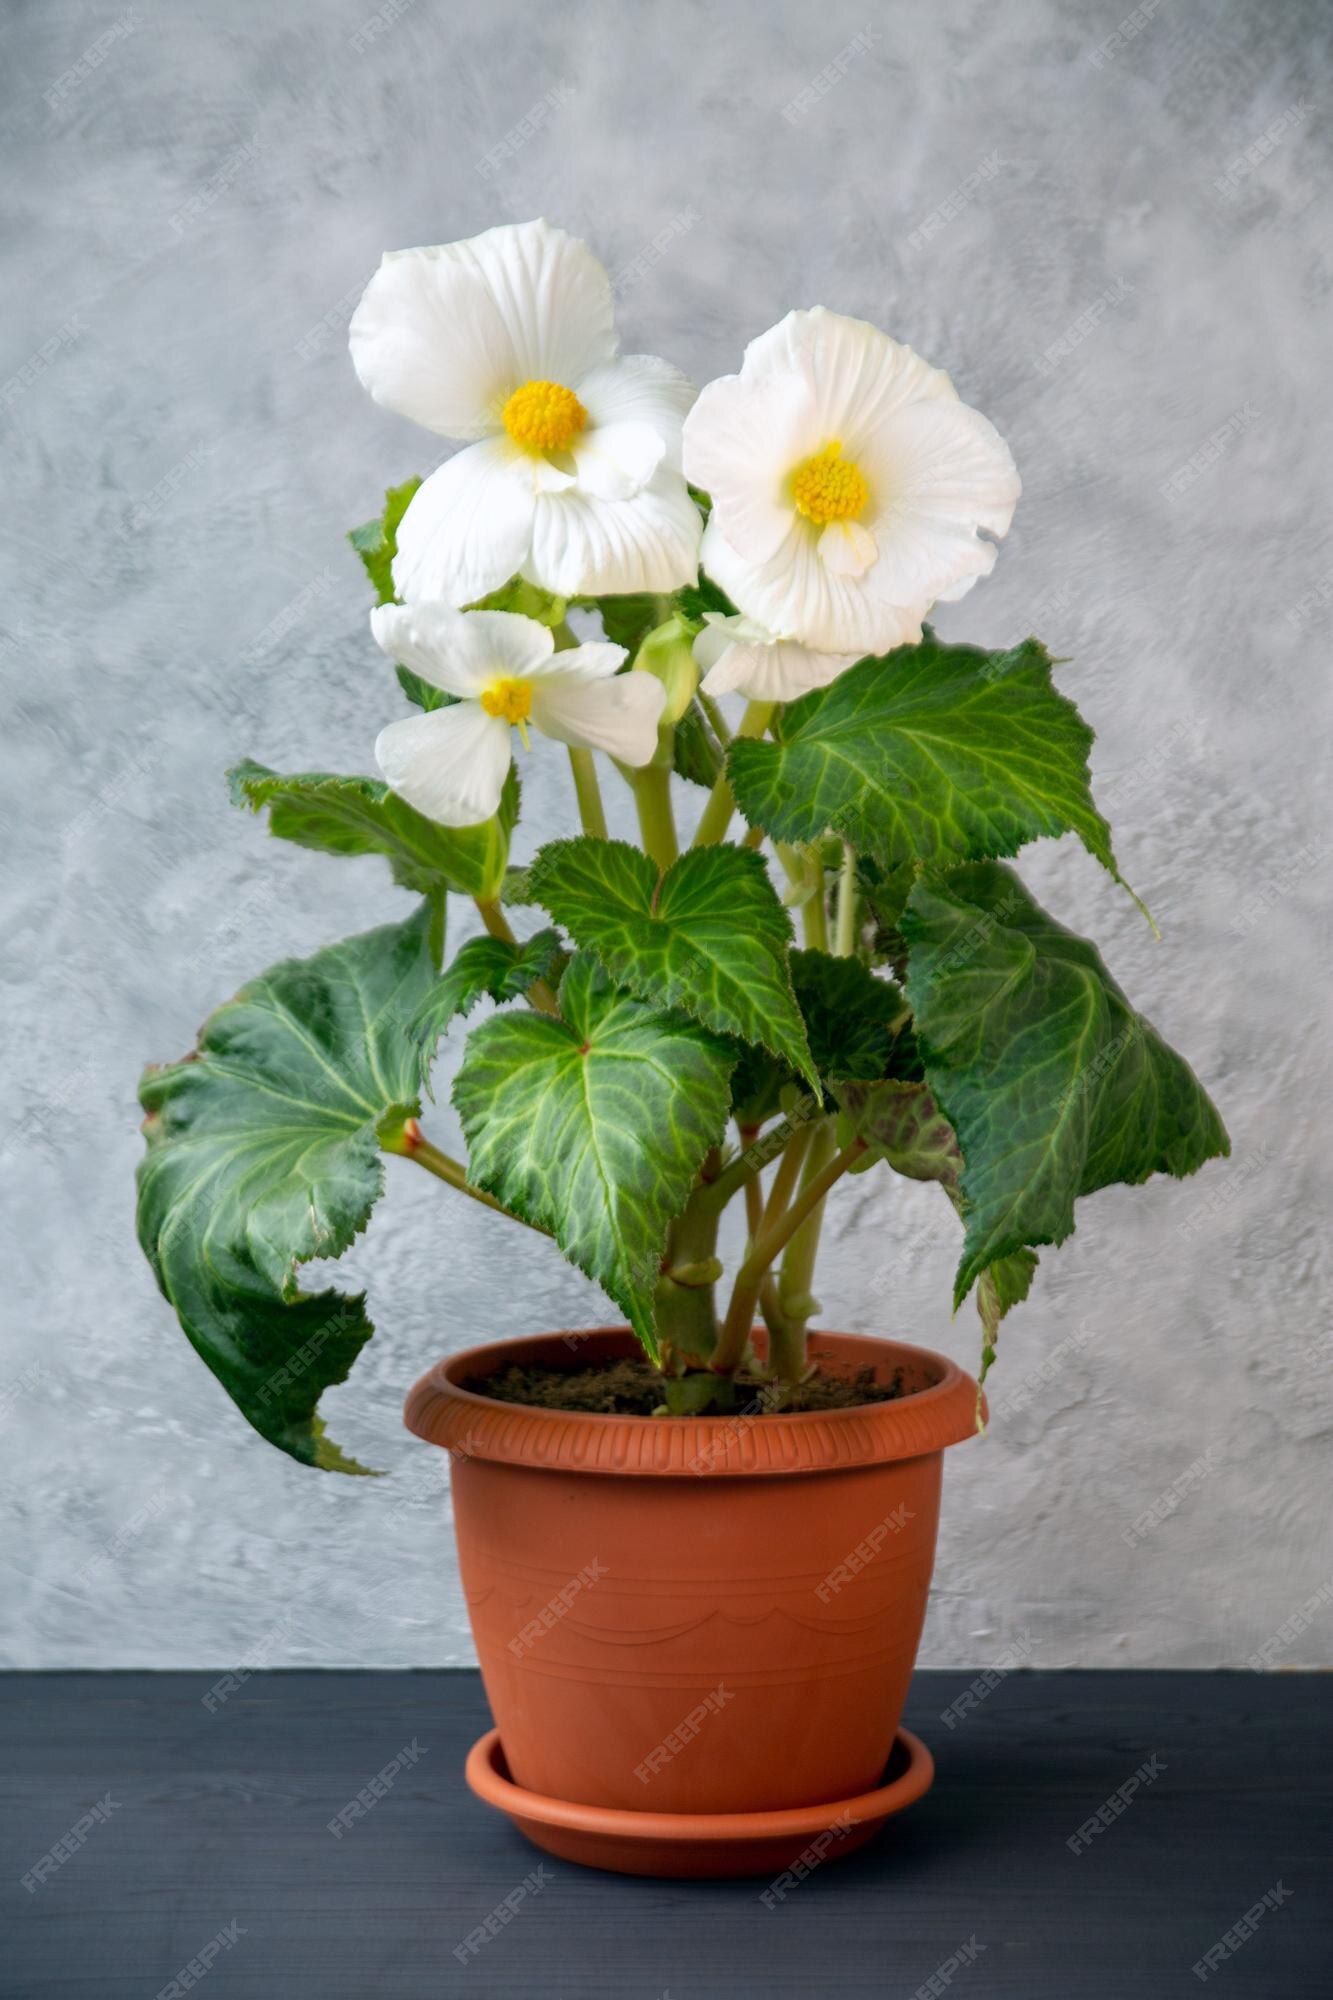 Linda begônia tuberosa branca florescendo em uma panela plantas de hobby de  floricultura | Foto Premium